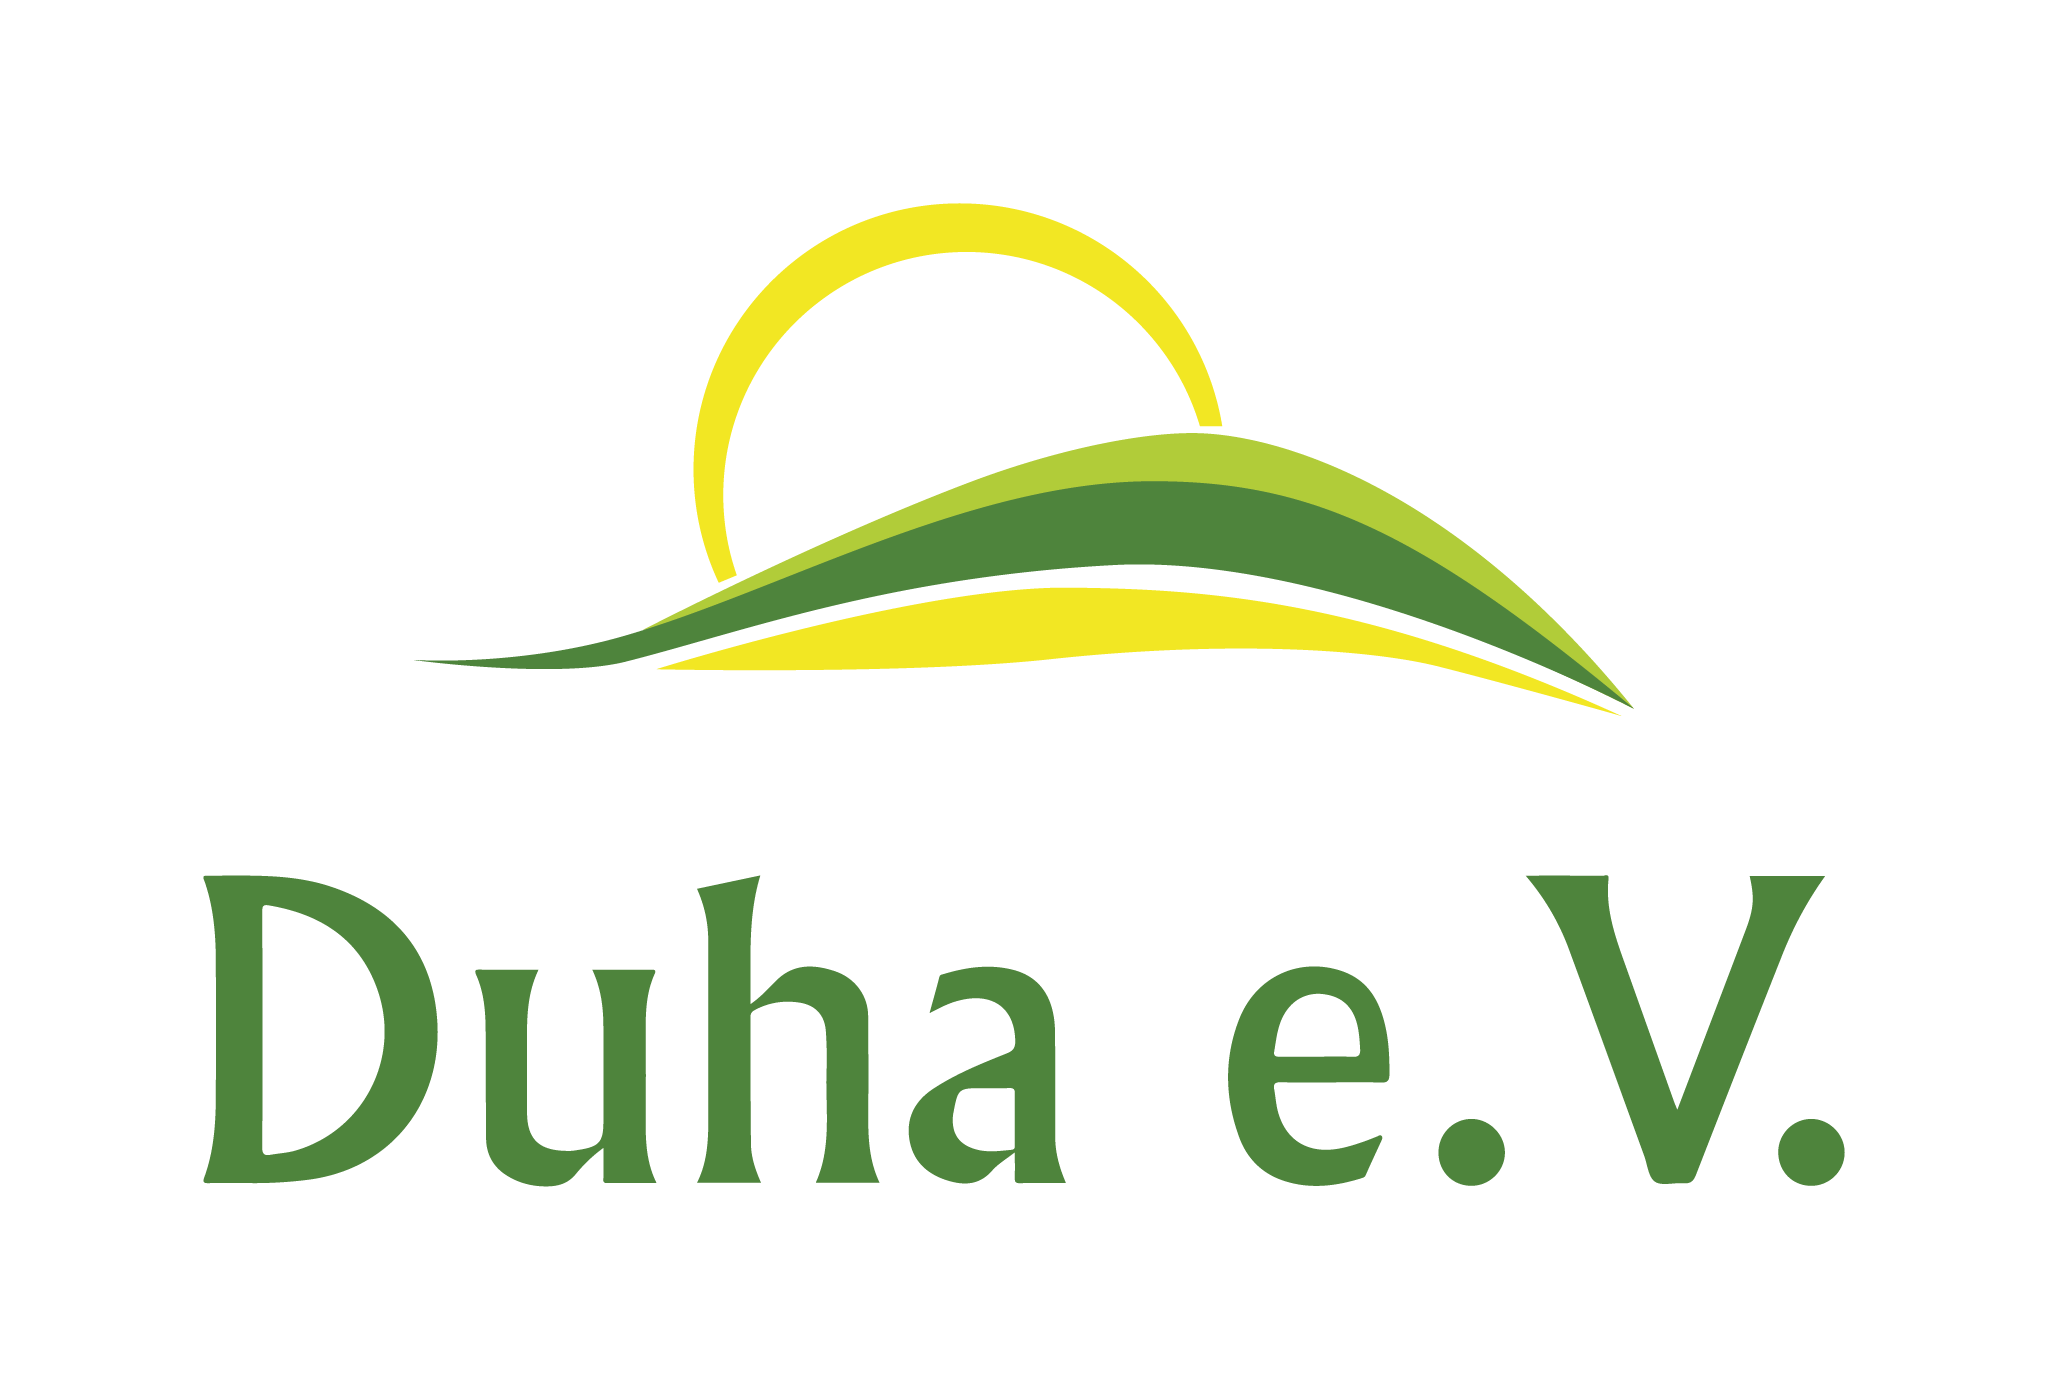 https://duha-ev.de/wp-content/uploads/2021/06/duha_eV_logo_ohne_claim.png